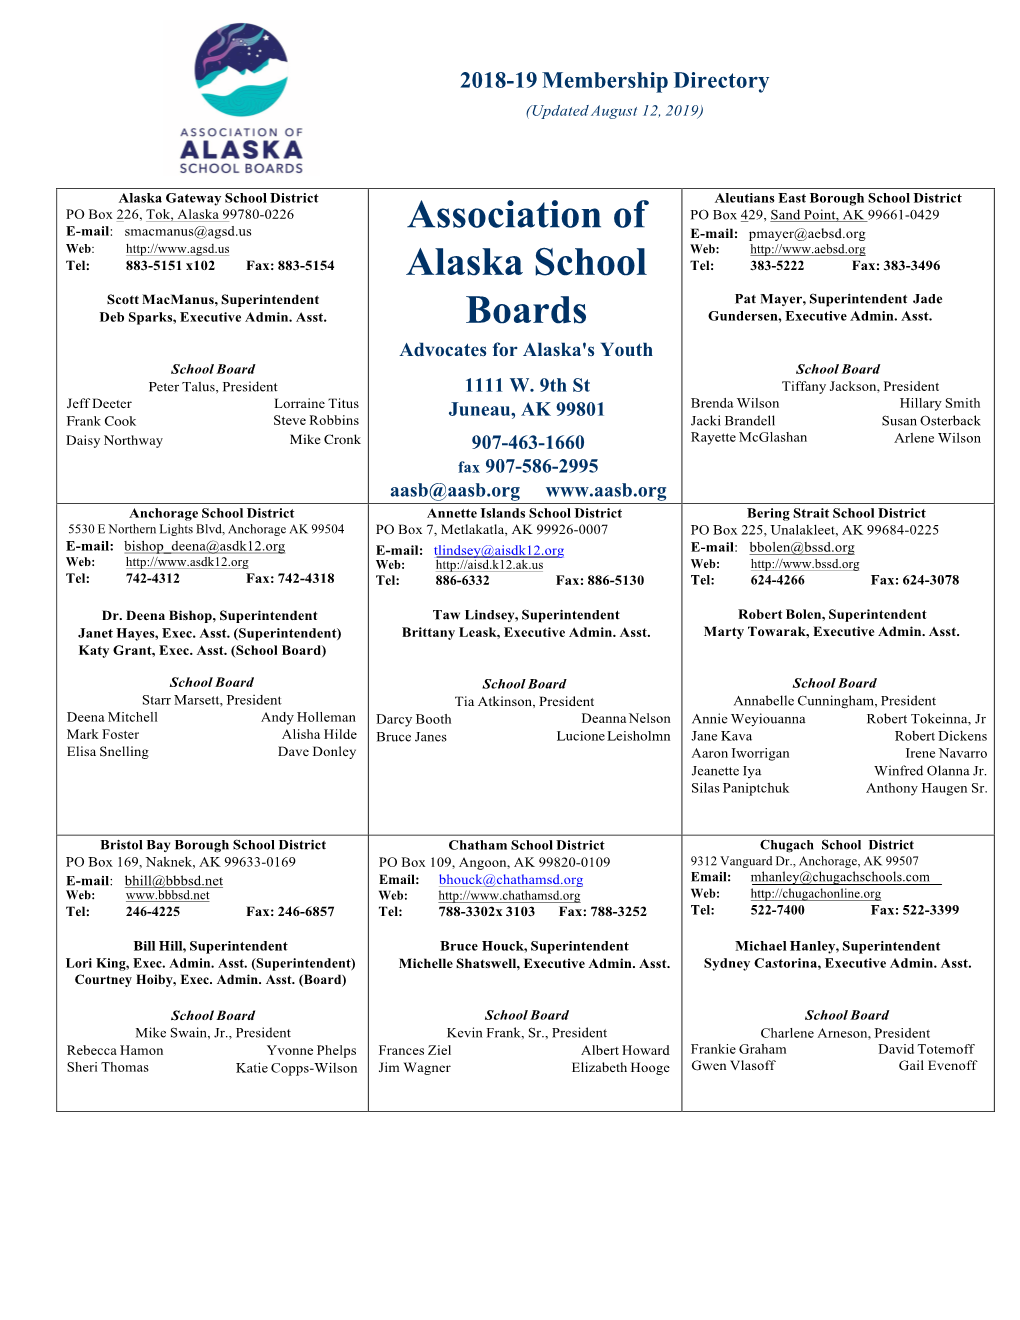 Association of Alaska School Boards